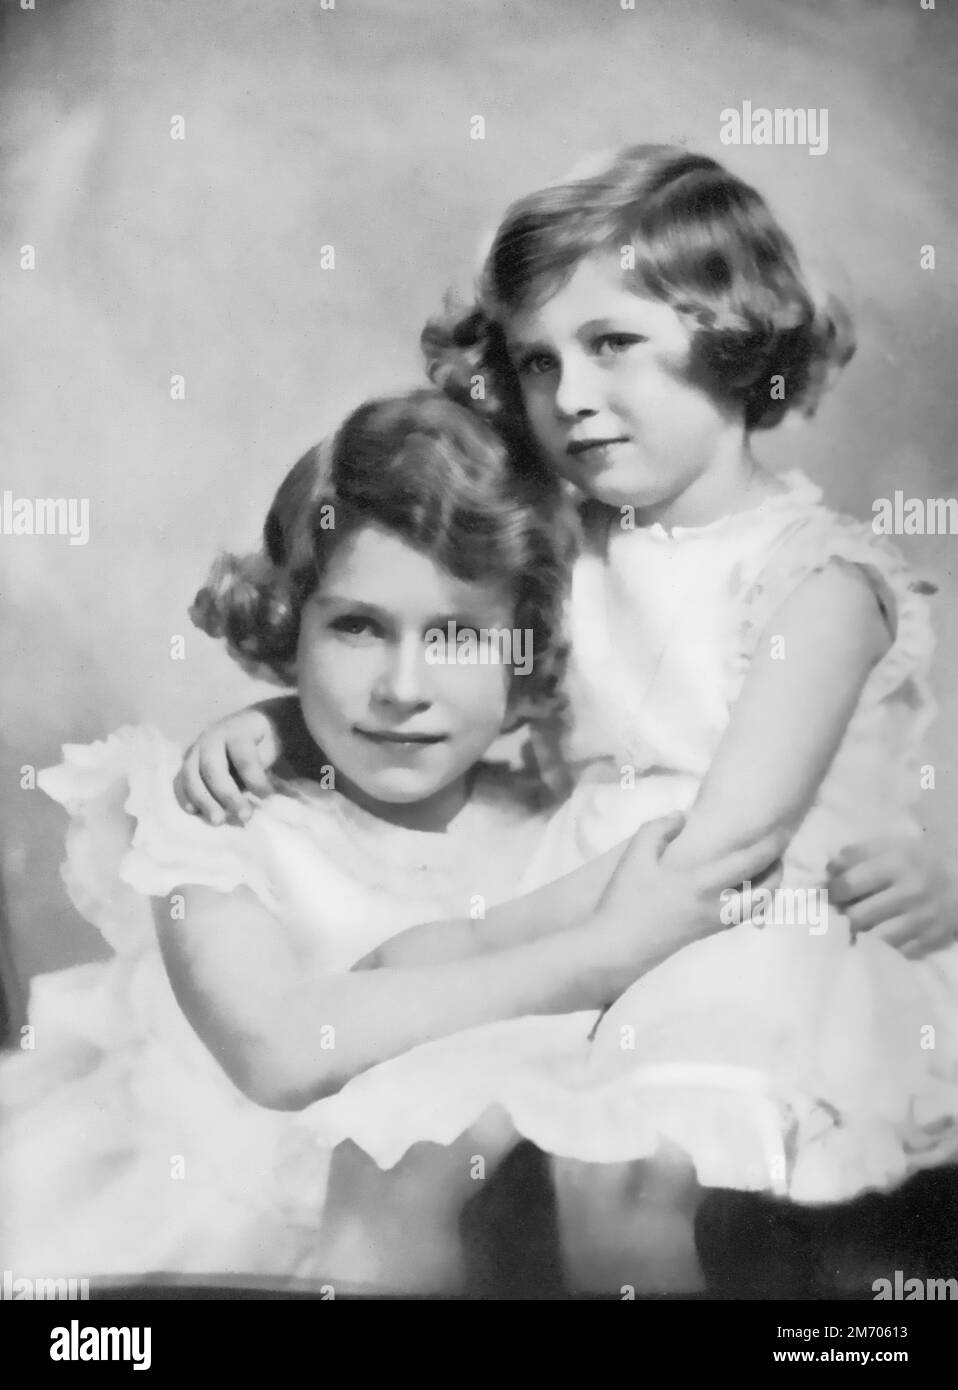 Prinzessinnen Elizabeth und Margaret, c1937. Prinzessin Elizabeth, später Königin Elizabeth II (1926-2022) und Prinzessin Margaret, später Prinzessin Margaret, Gräfin von Snowdon (1930-2002), fotografiert im Alter von etwa 11 und 7 Jahren. Stockfoto